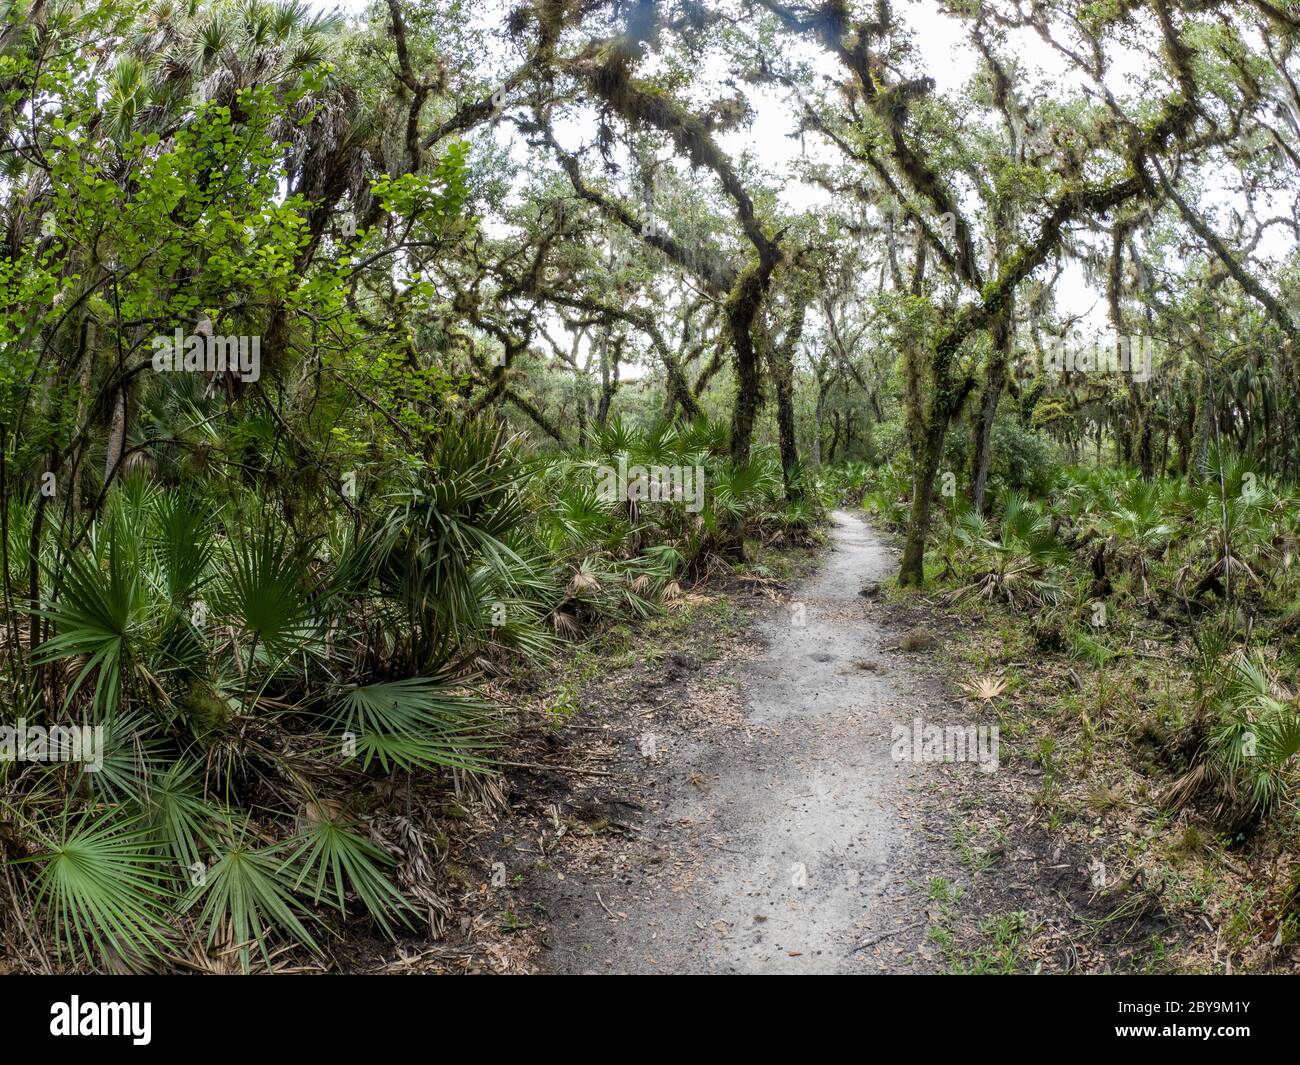 Sentier dans la région de William S Boylston nature Trail dans le parc national de Myakka River à Sarasota, Floride, aux États-Unis Banque D'Images